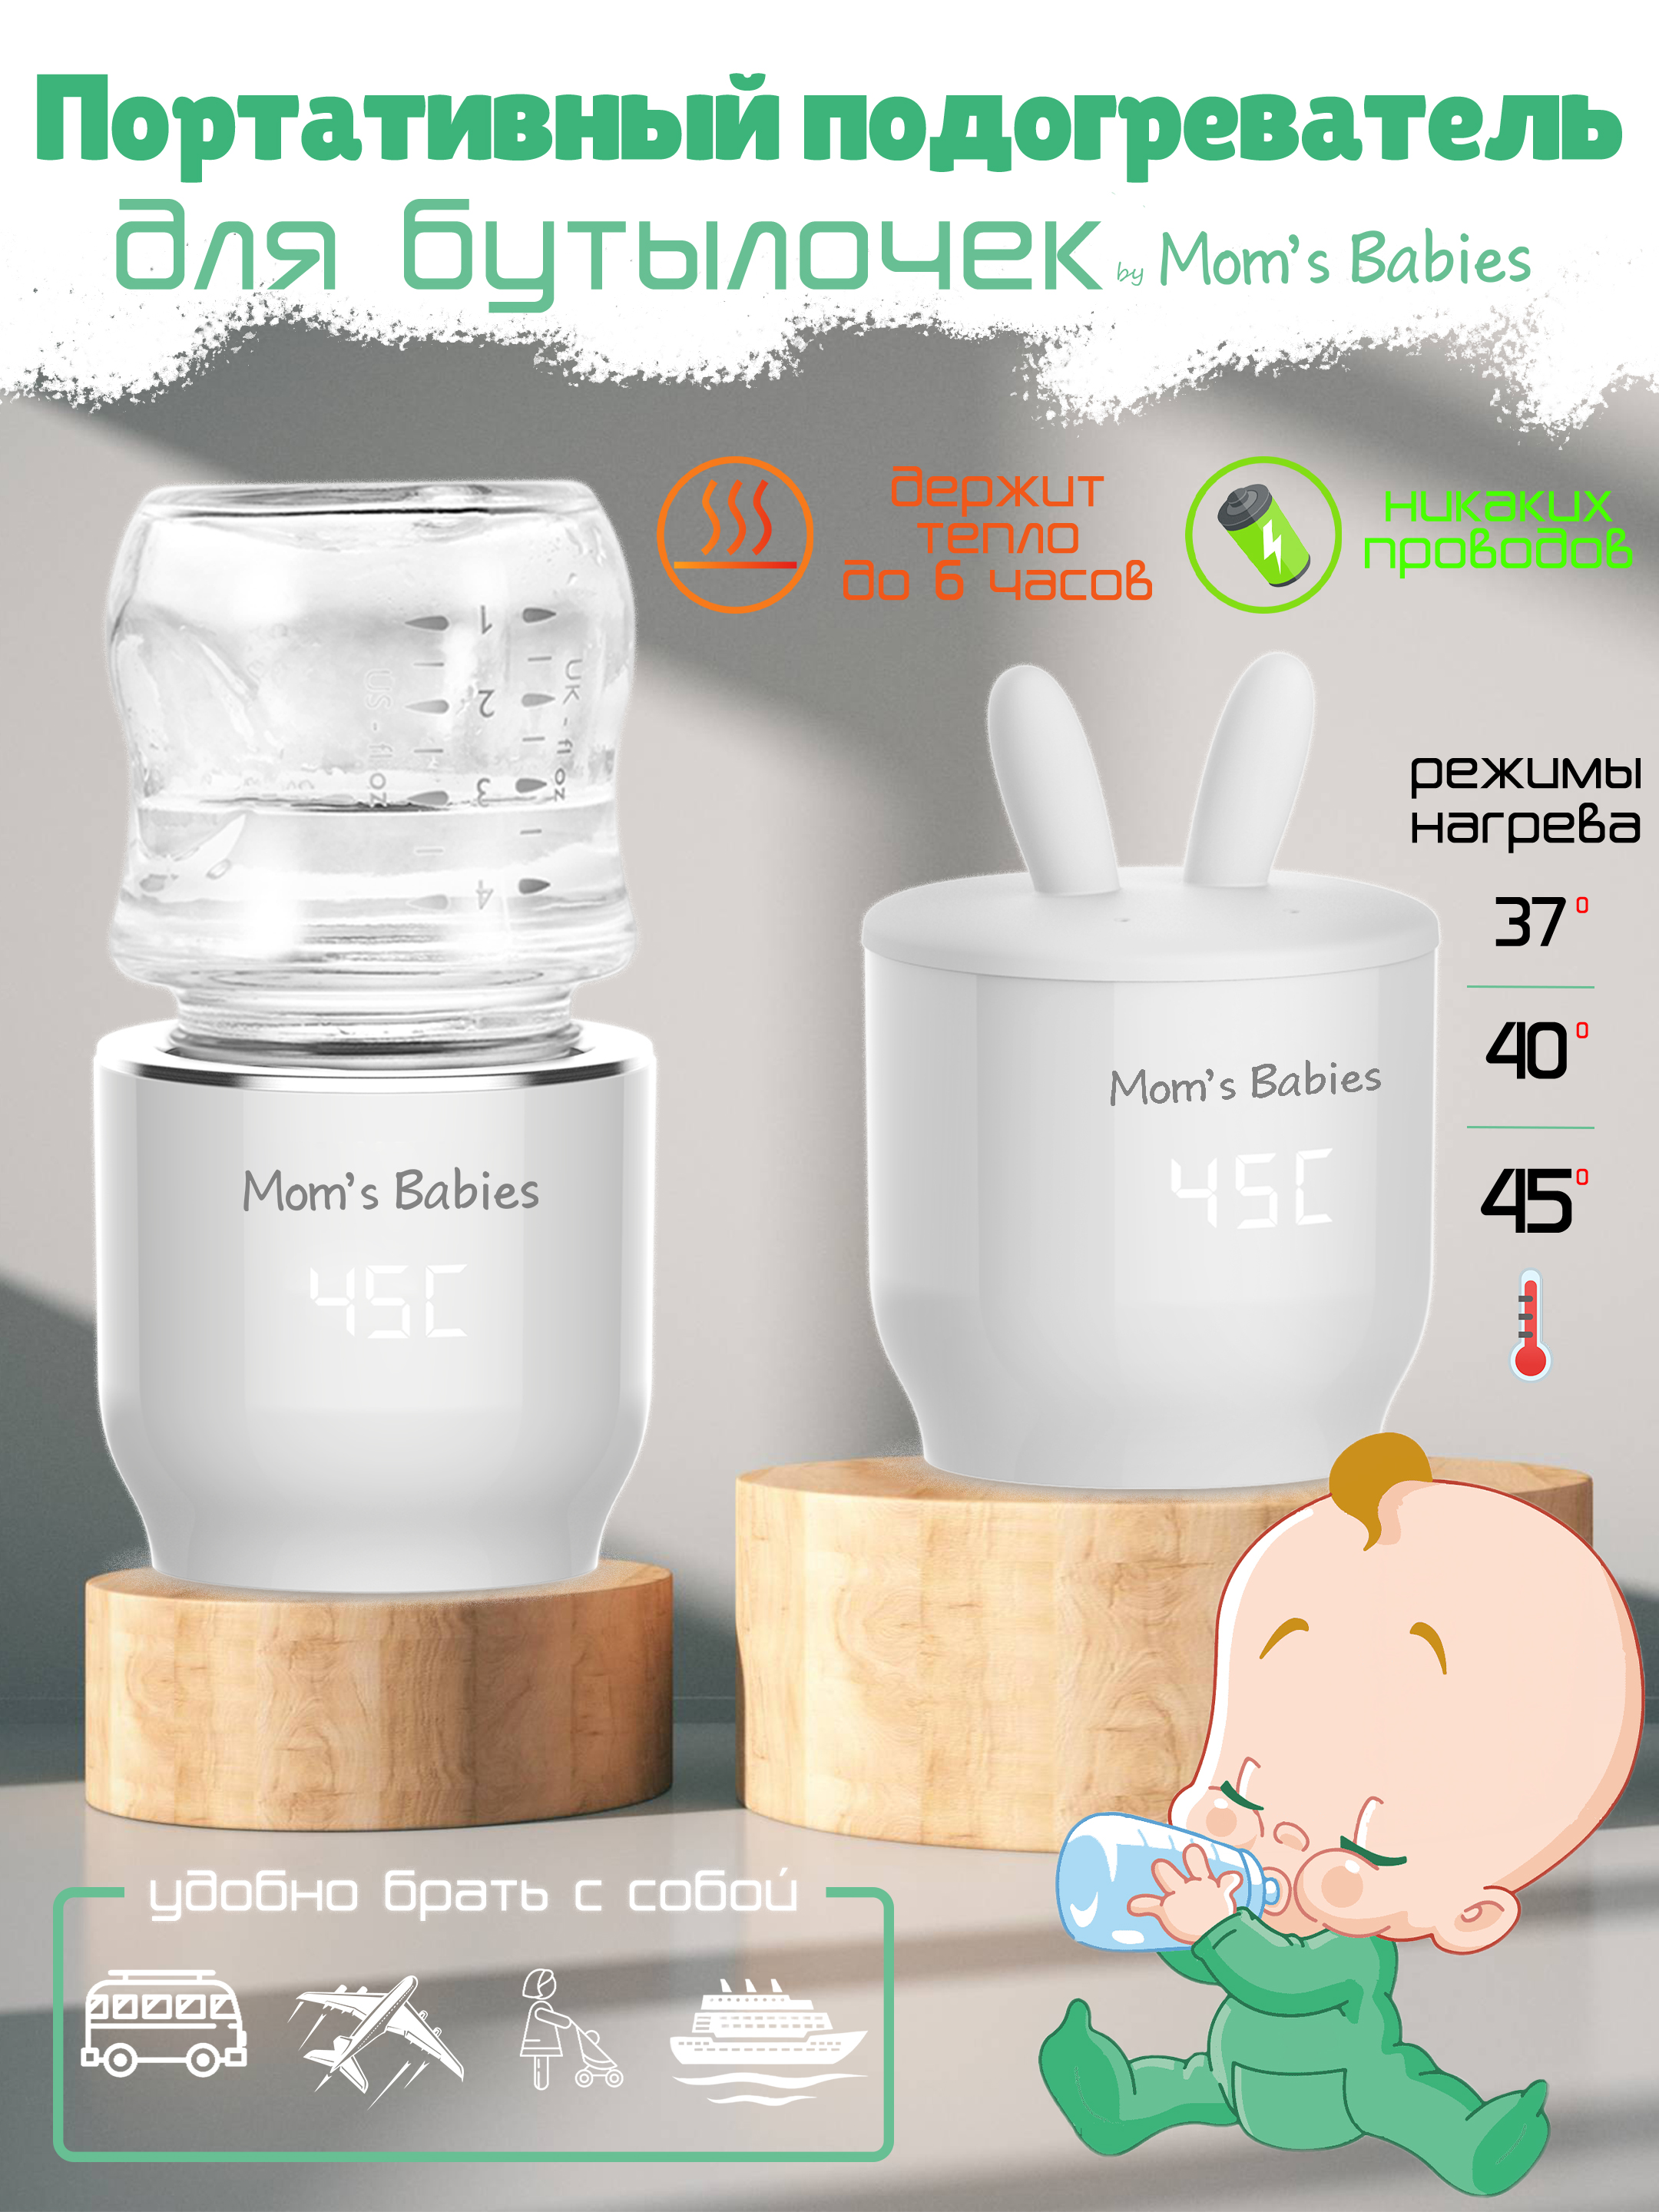 Портативный подогреватель Mom's Babies FS01 для бутылочек и детского питания белый портативный вентилятор xiaomi zmi af217 ремешок 3 скорости до 120° 2400 мач белый